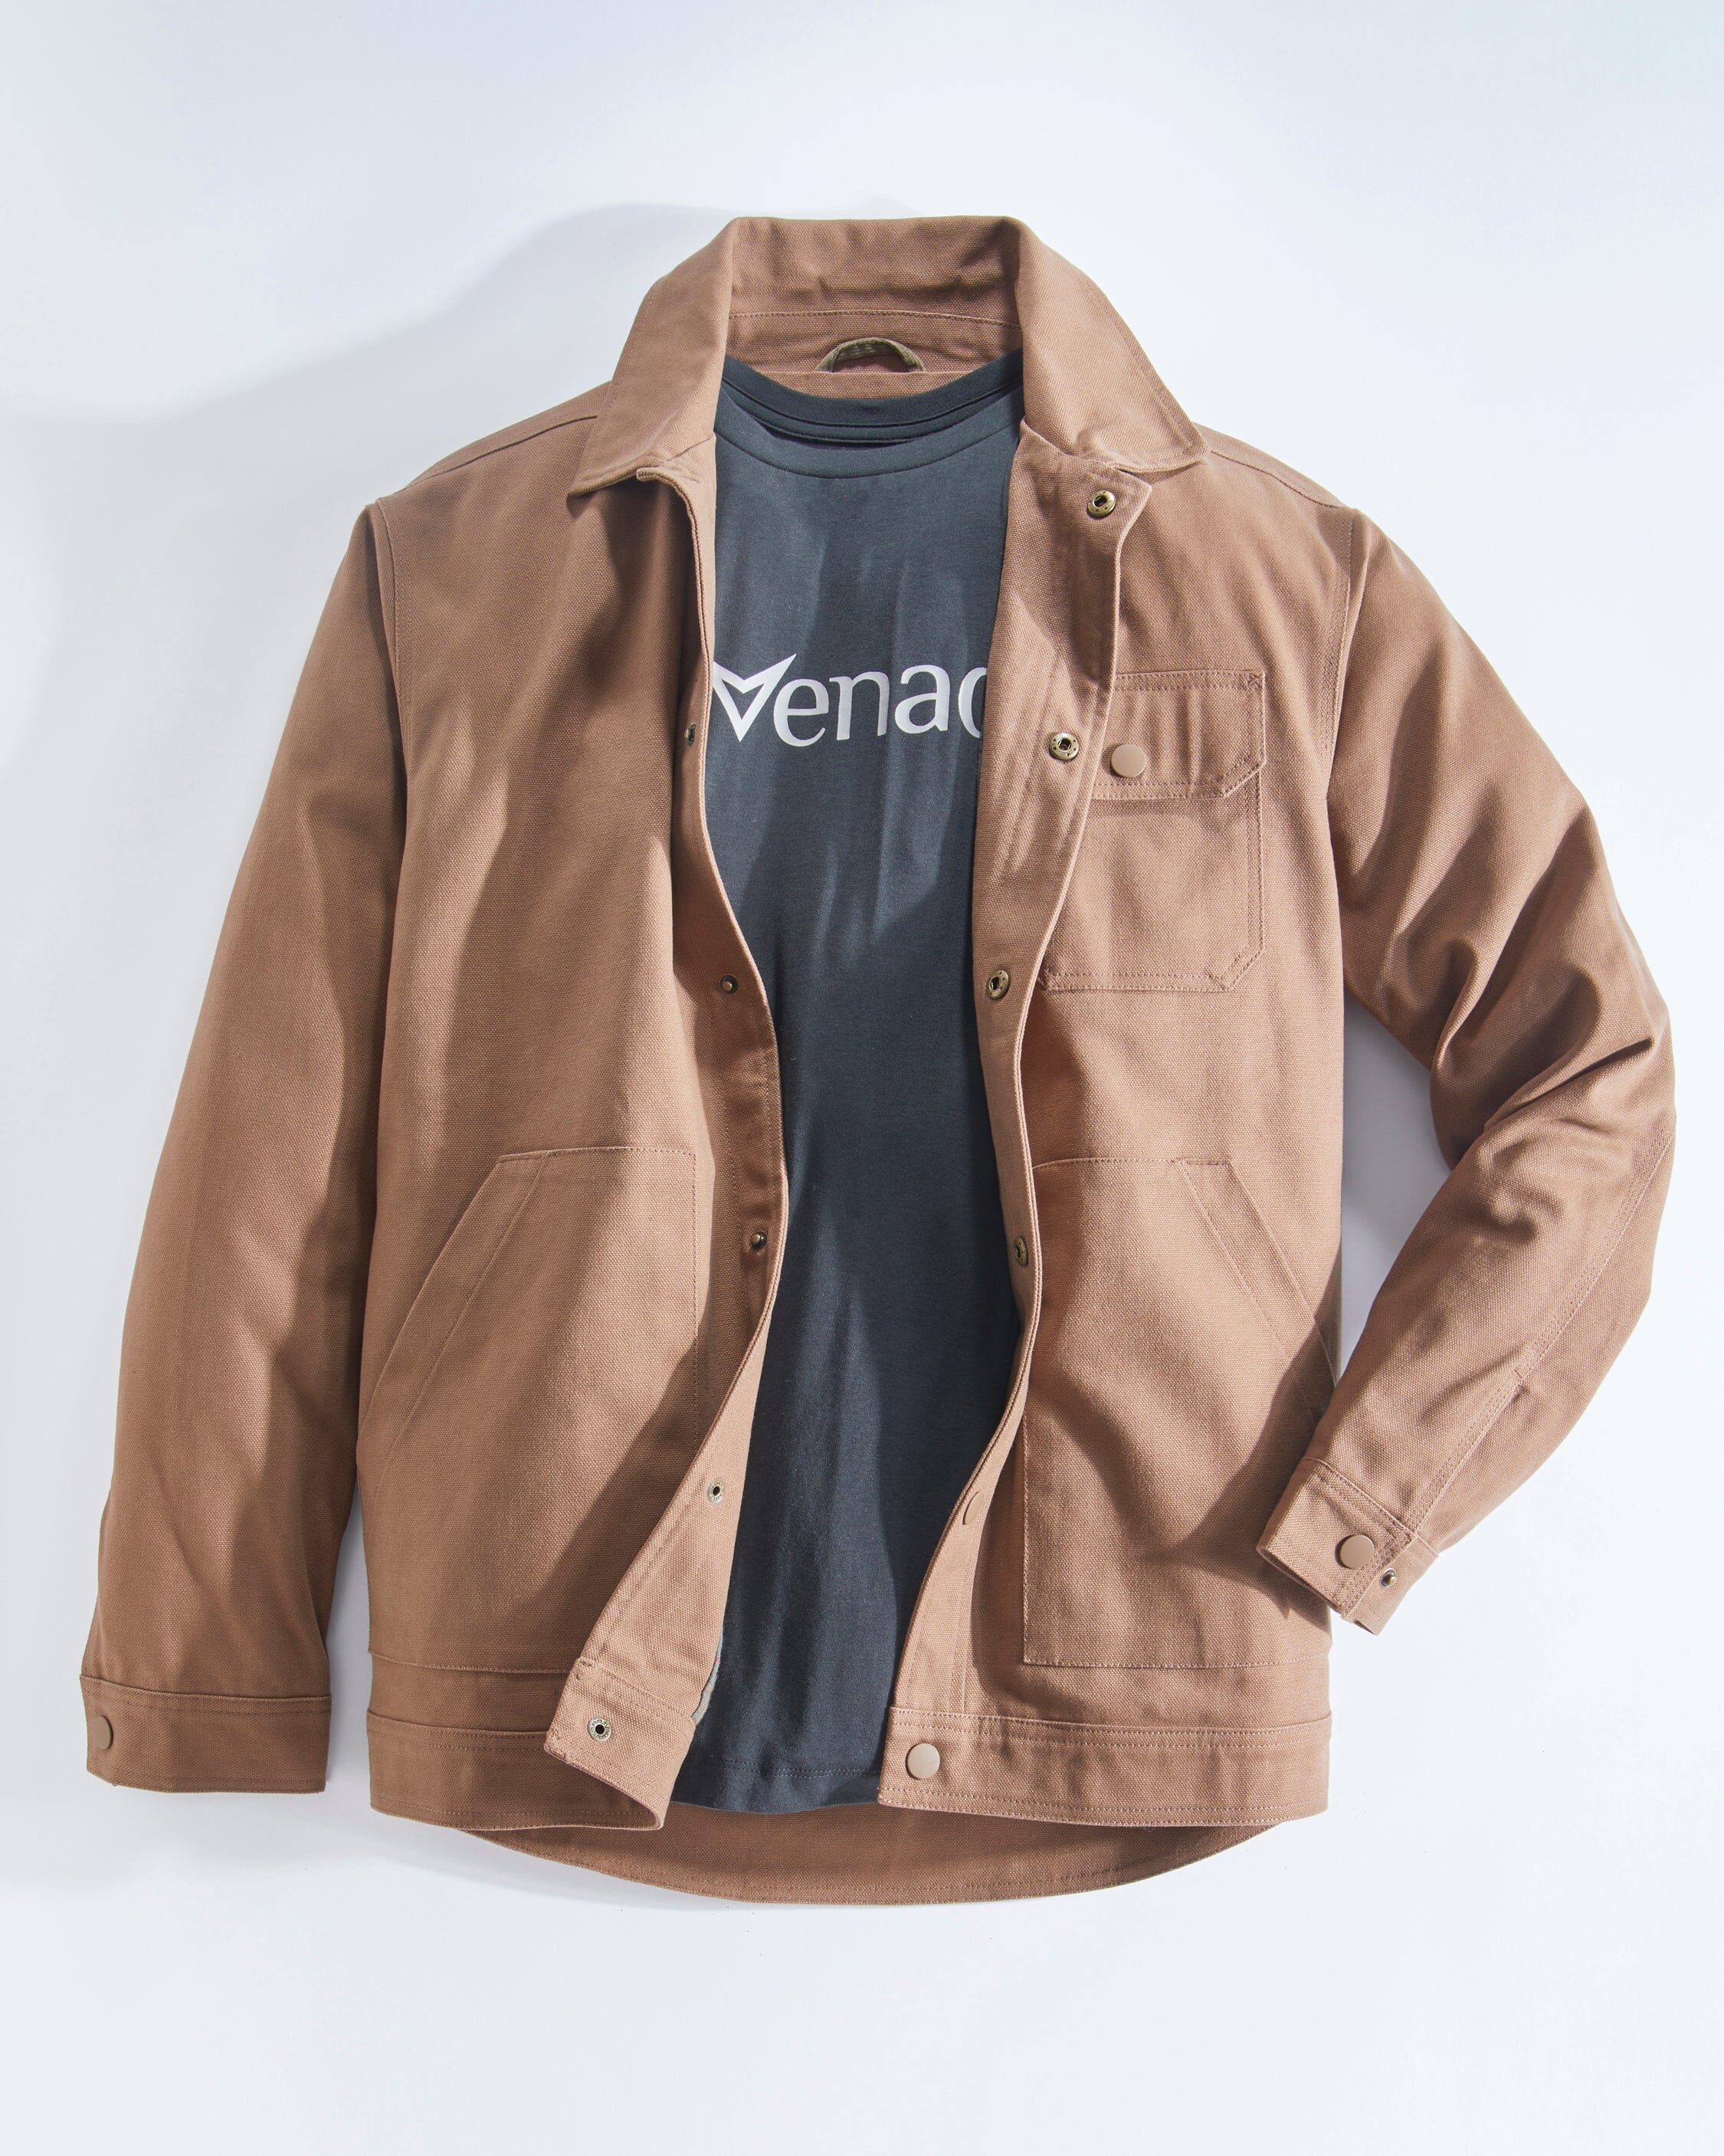 Concealed Carry Shirt Jacket – Venado